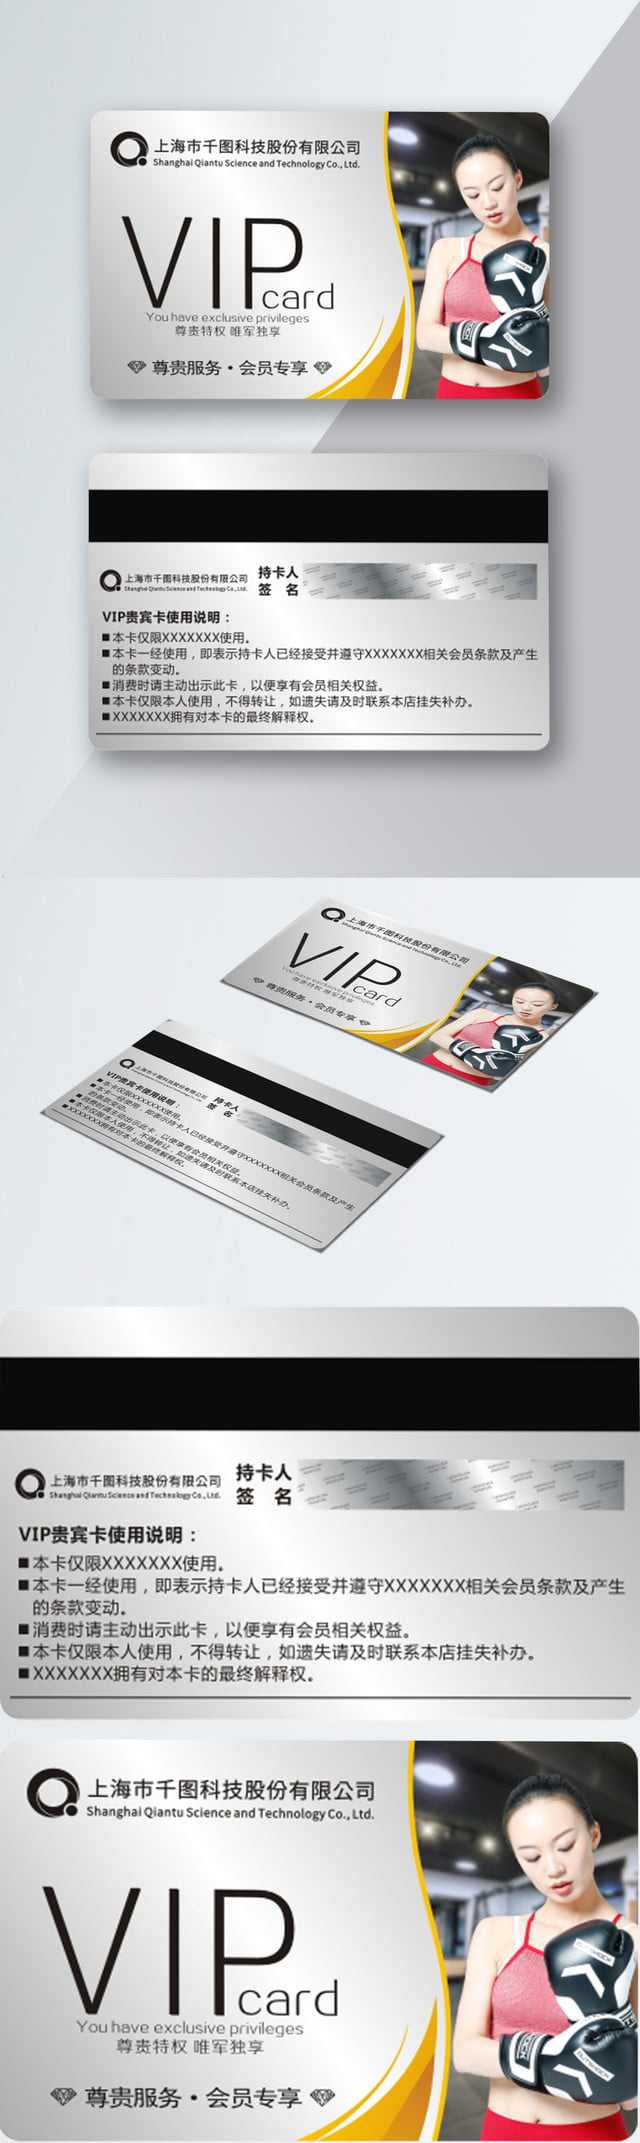 Vip Vip Card Membership Card Fitness Card Template For Free Inside Gym Membership Card Template